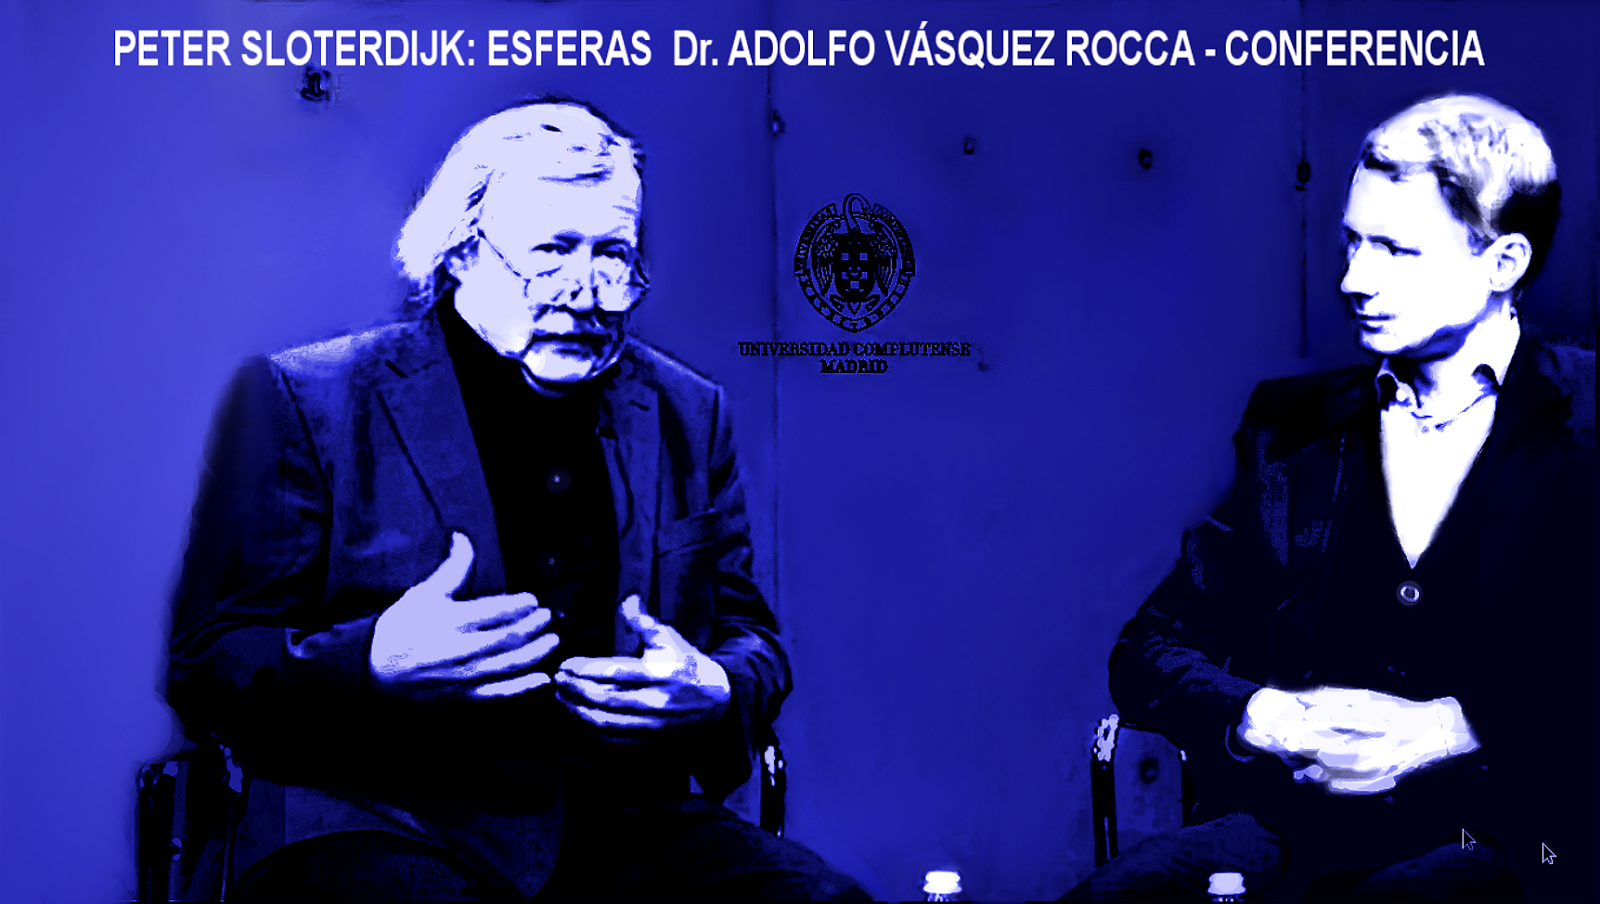 http://kunstbegriff.files.wordpress.com/2014/05/f38ed-conference_sloterdijk_peter_dr-adolfovasquezrocca_blue_elparquehumanoxl.png